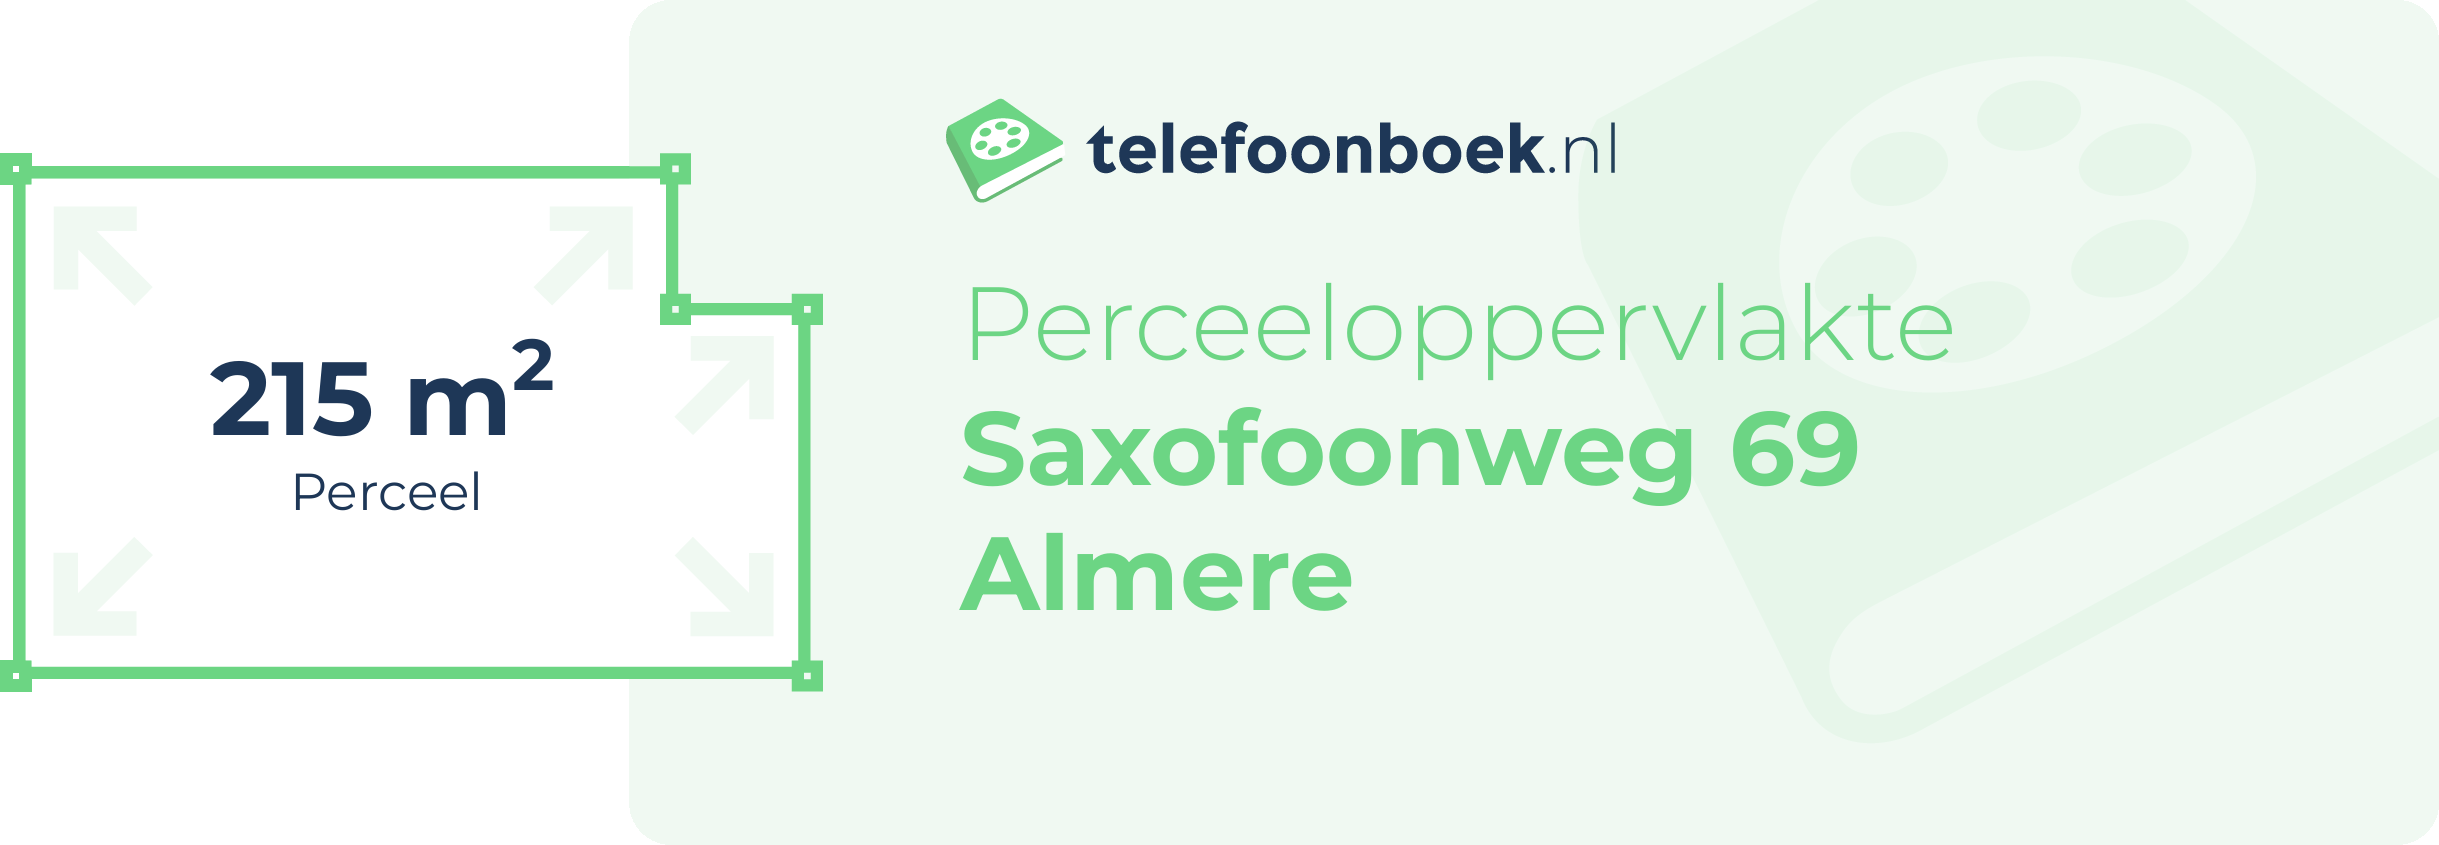 Perceeloppervlakte Saxofoonweg 69 Almere